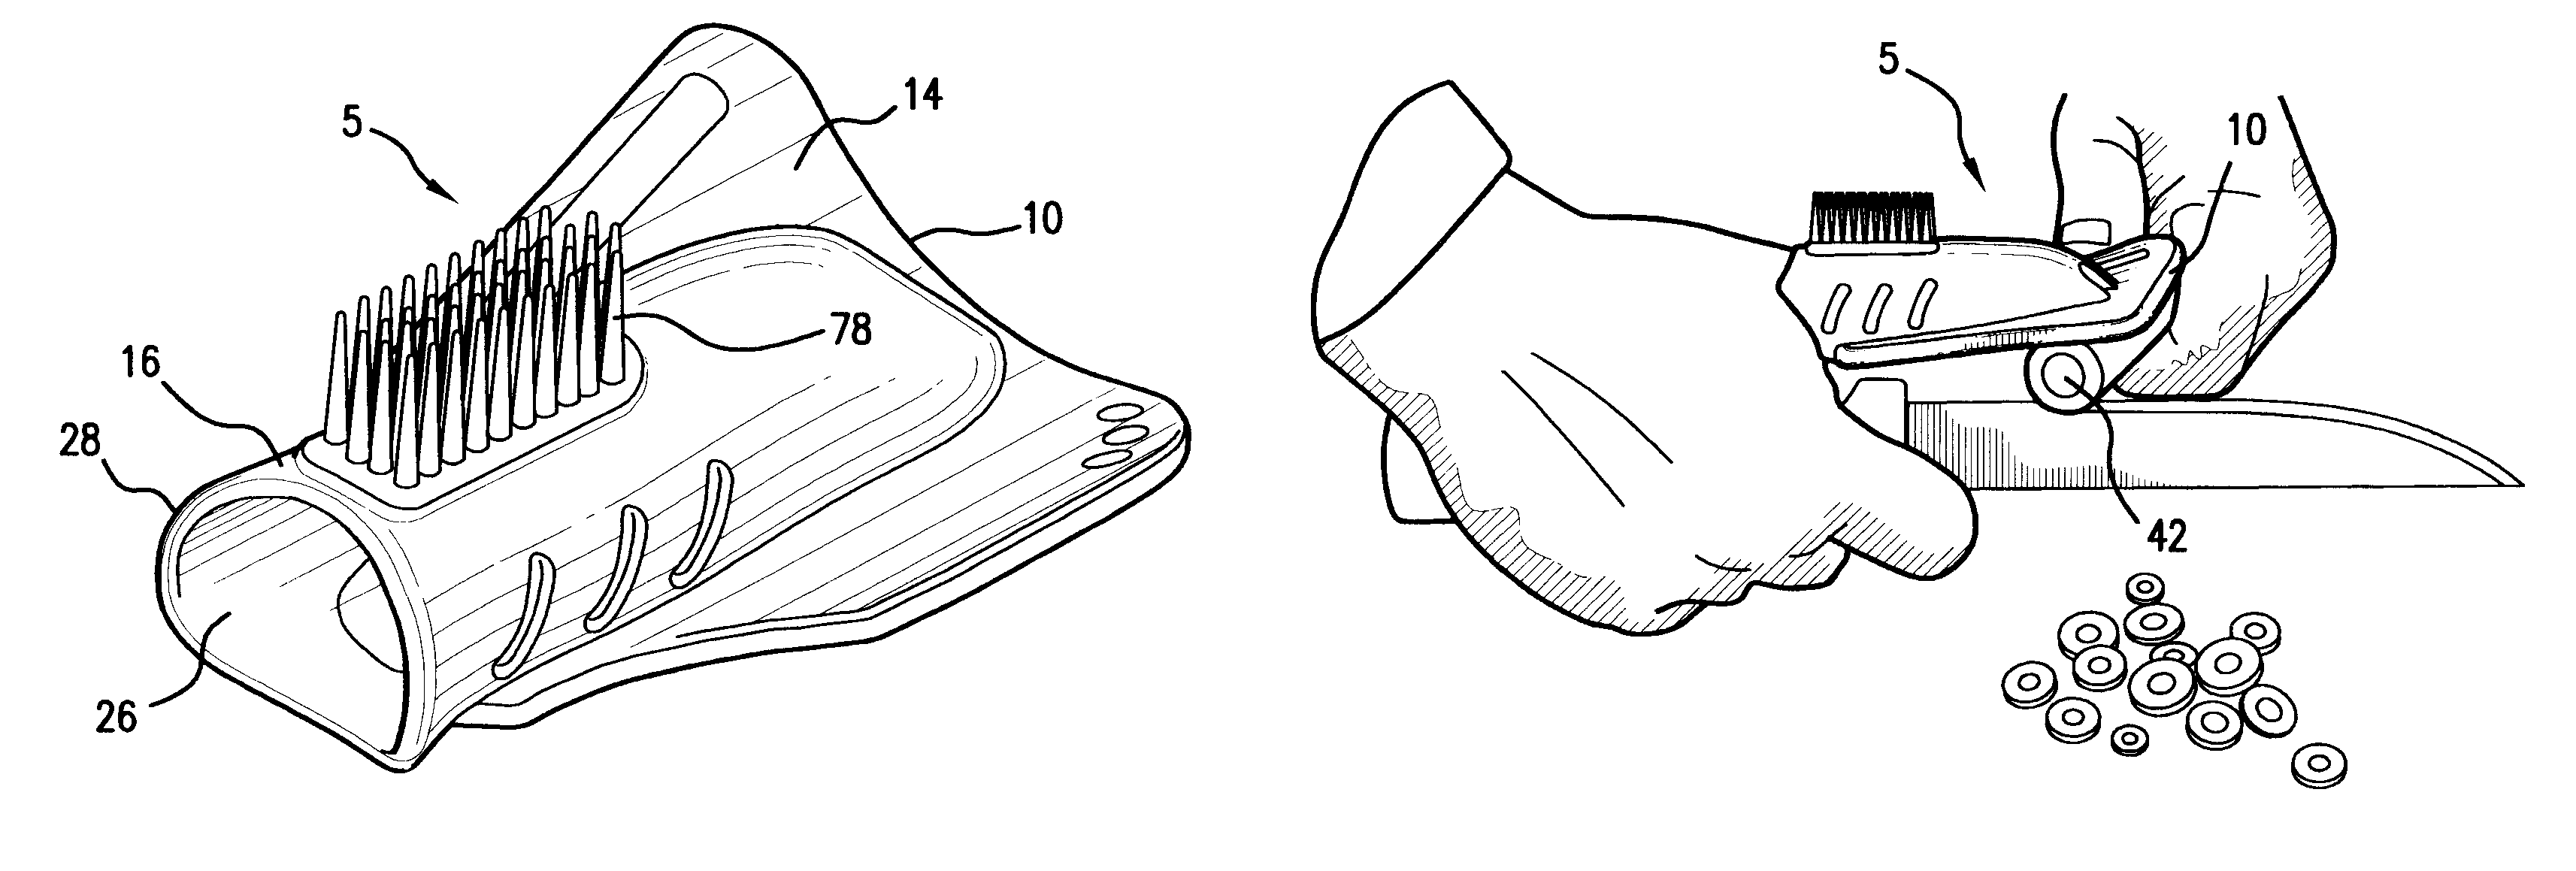 Thumb utensil with cutting board